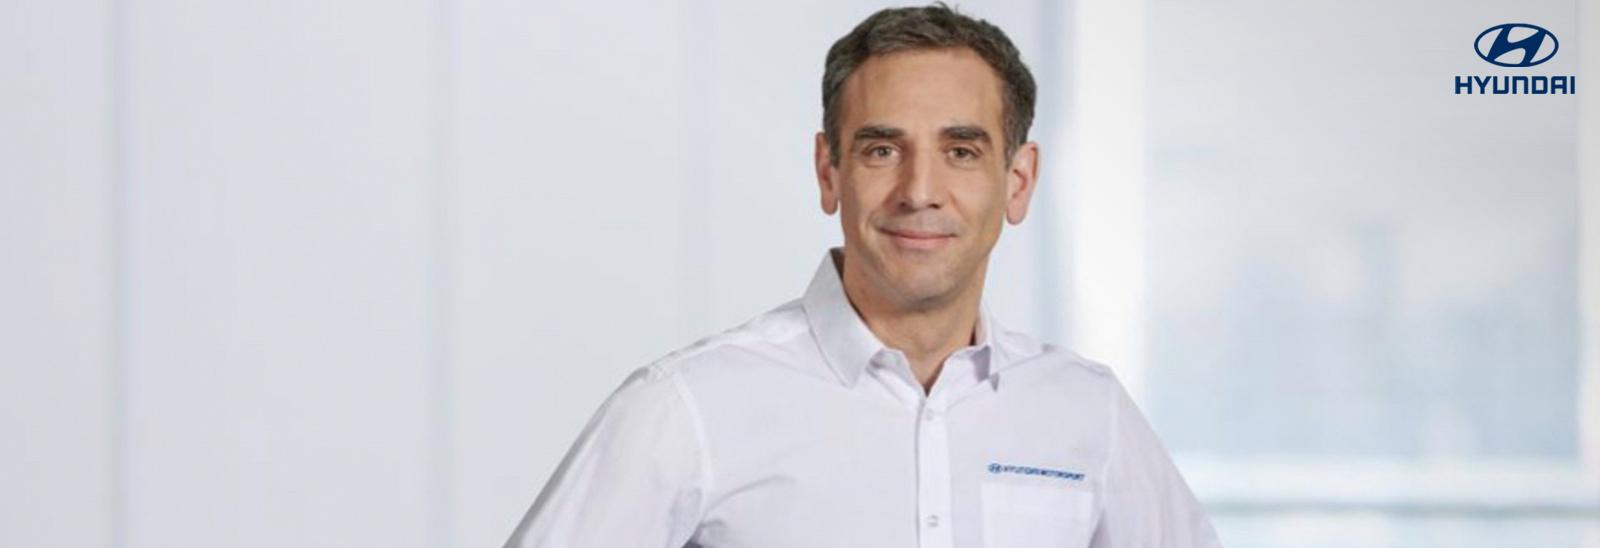 Cyril Abiteboul, nuevo director de Hyundai Motorsports